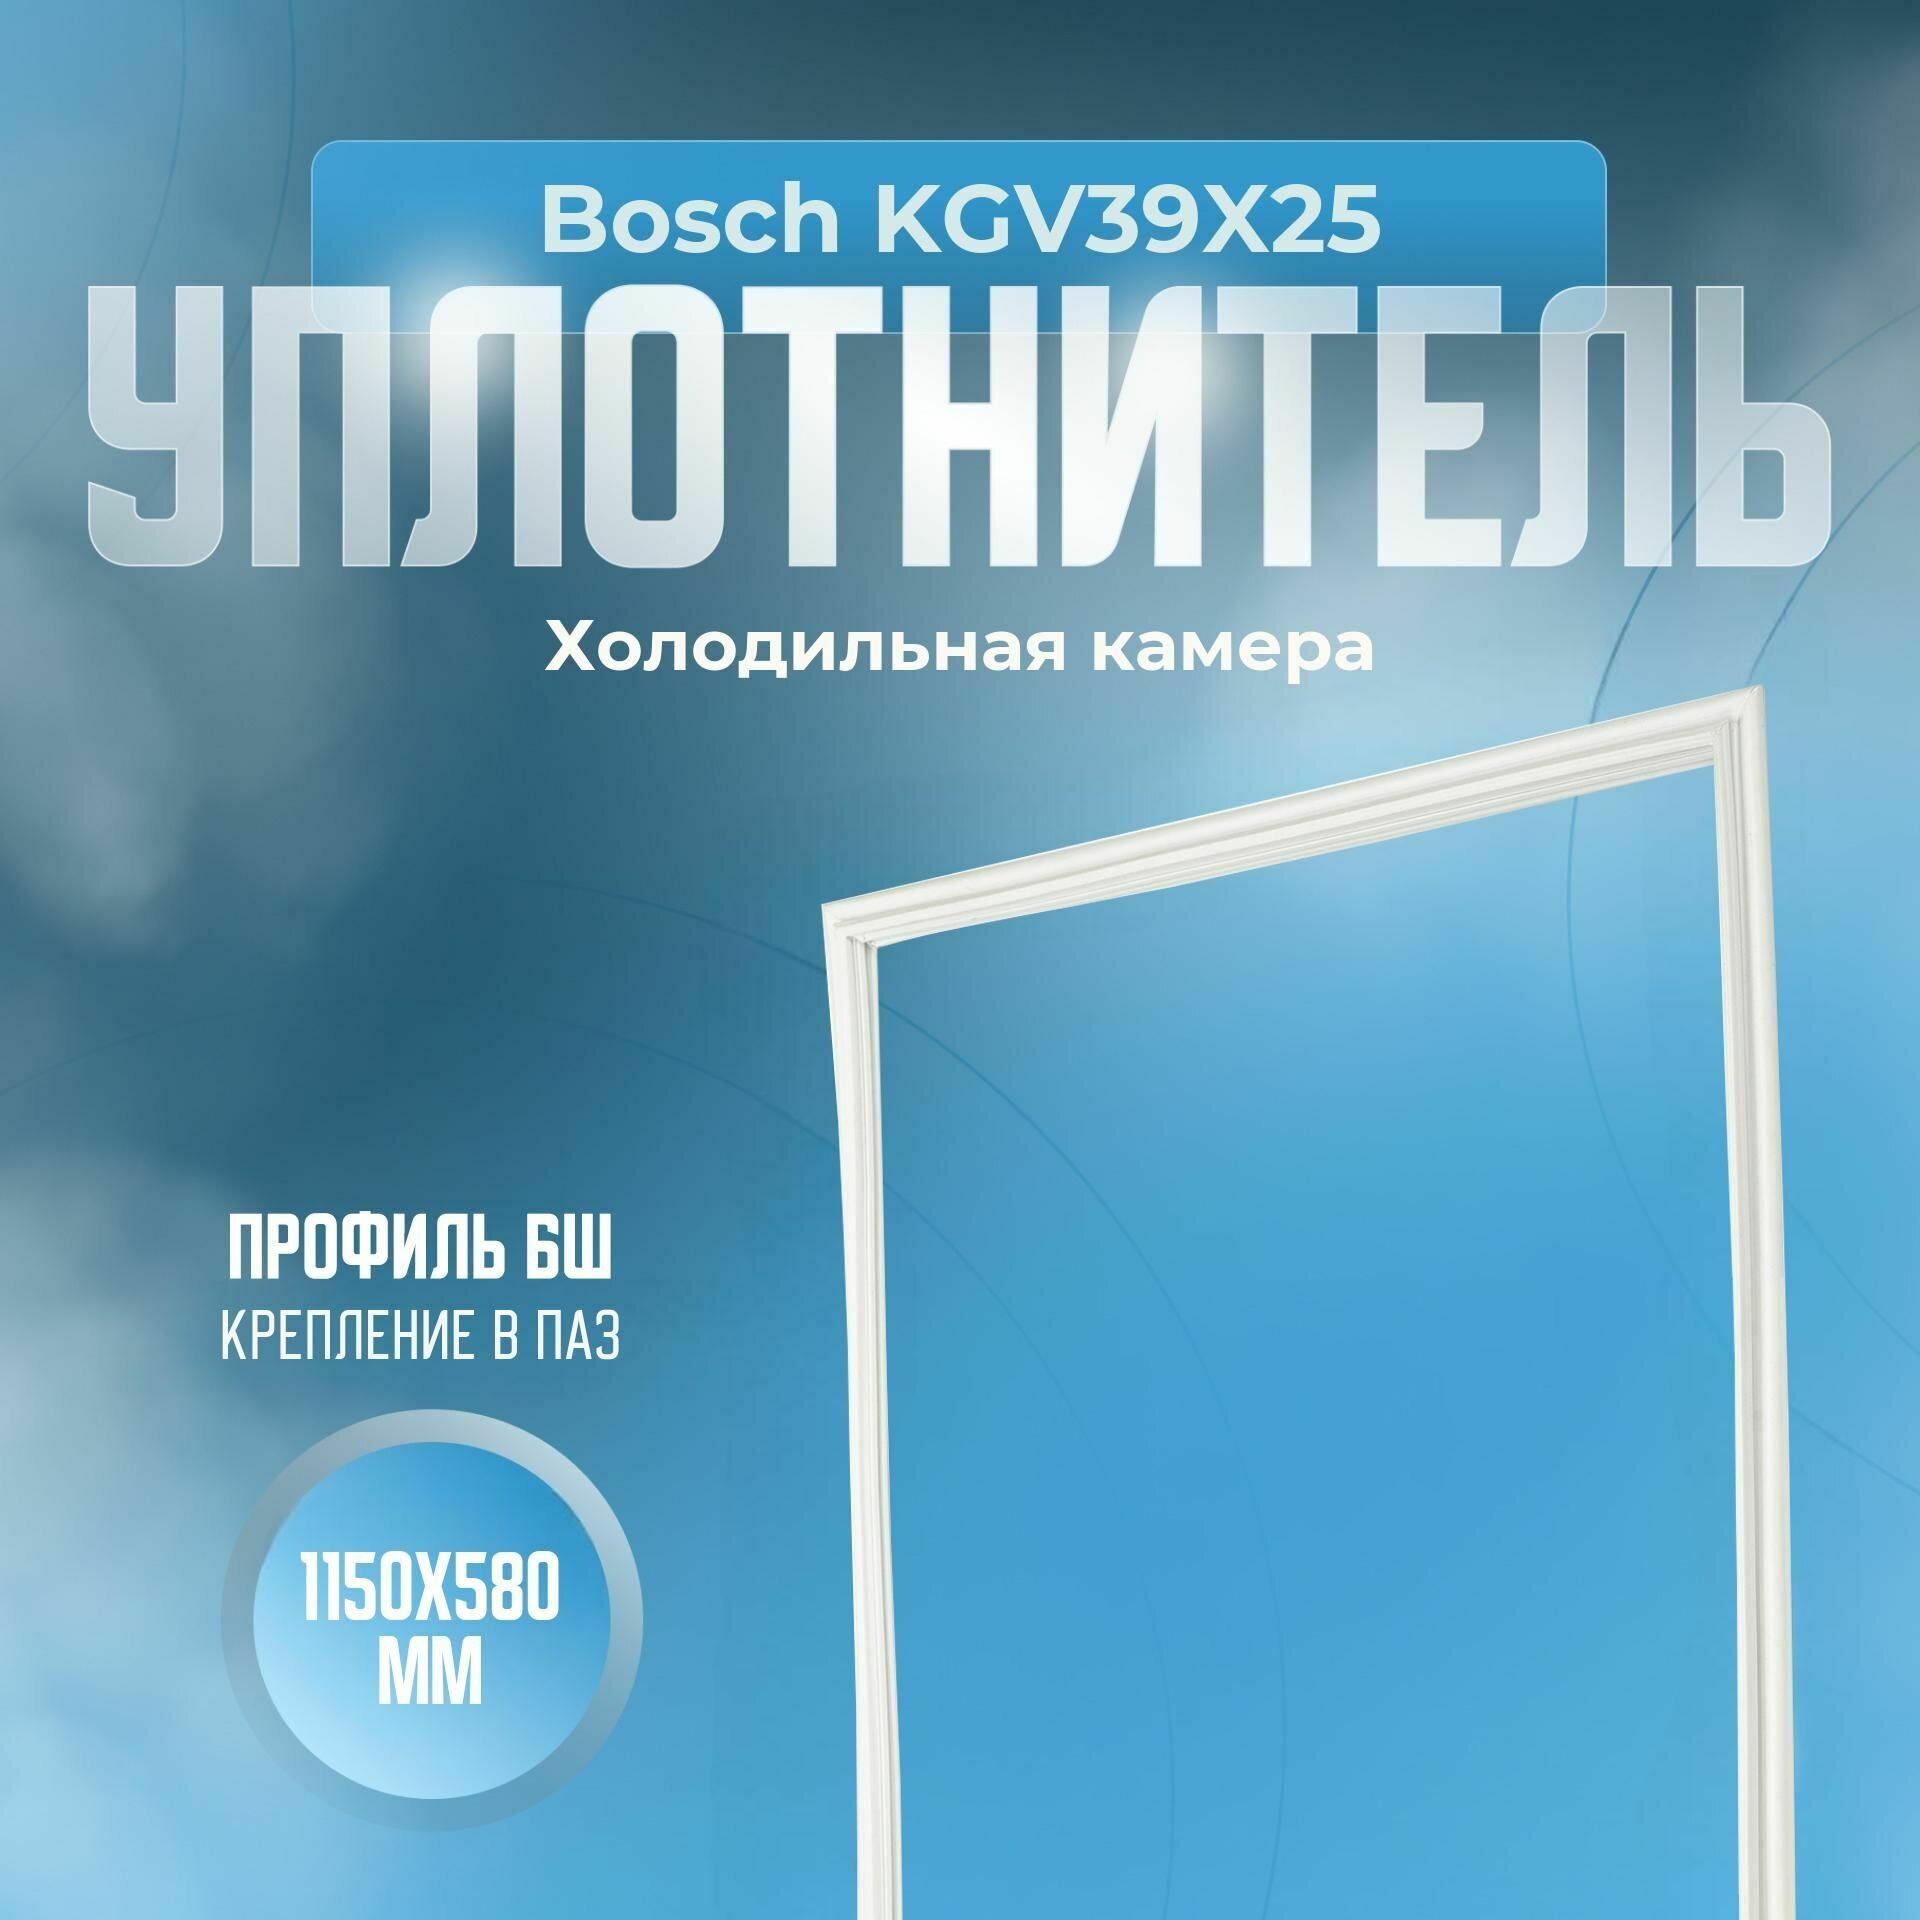 Уплотнитель Bosch KGV39X25. х. к, Размер - 1150х580 мм. БШ